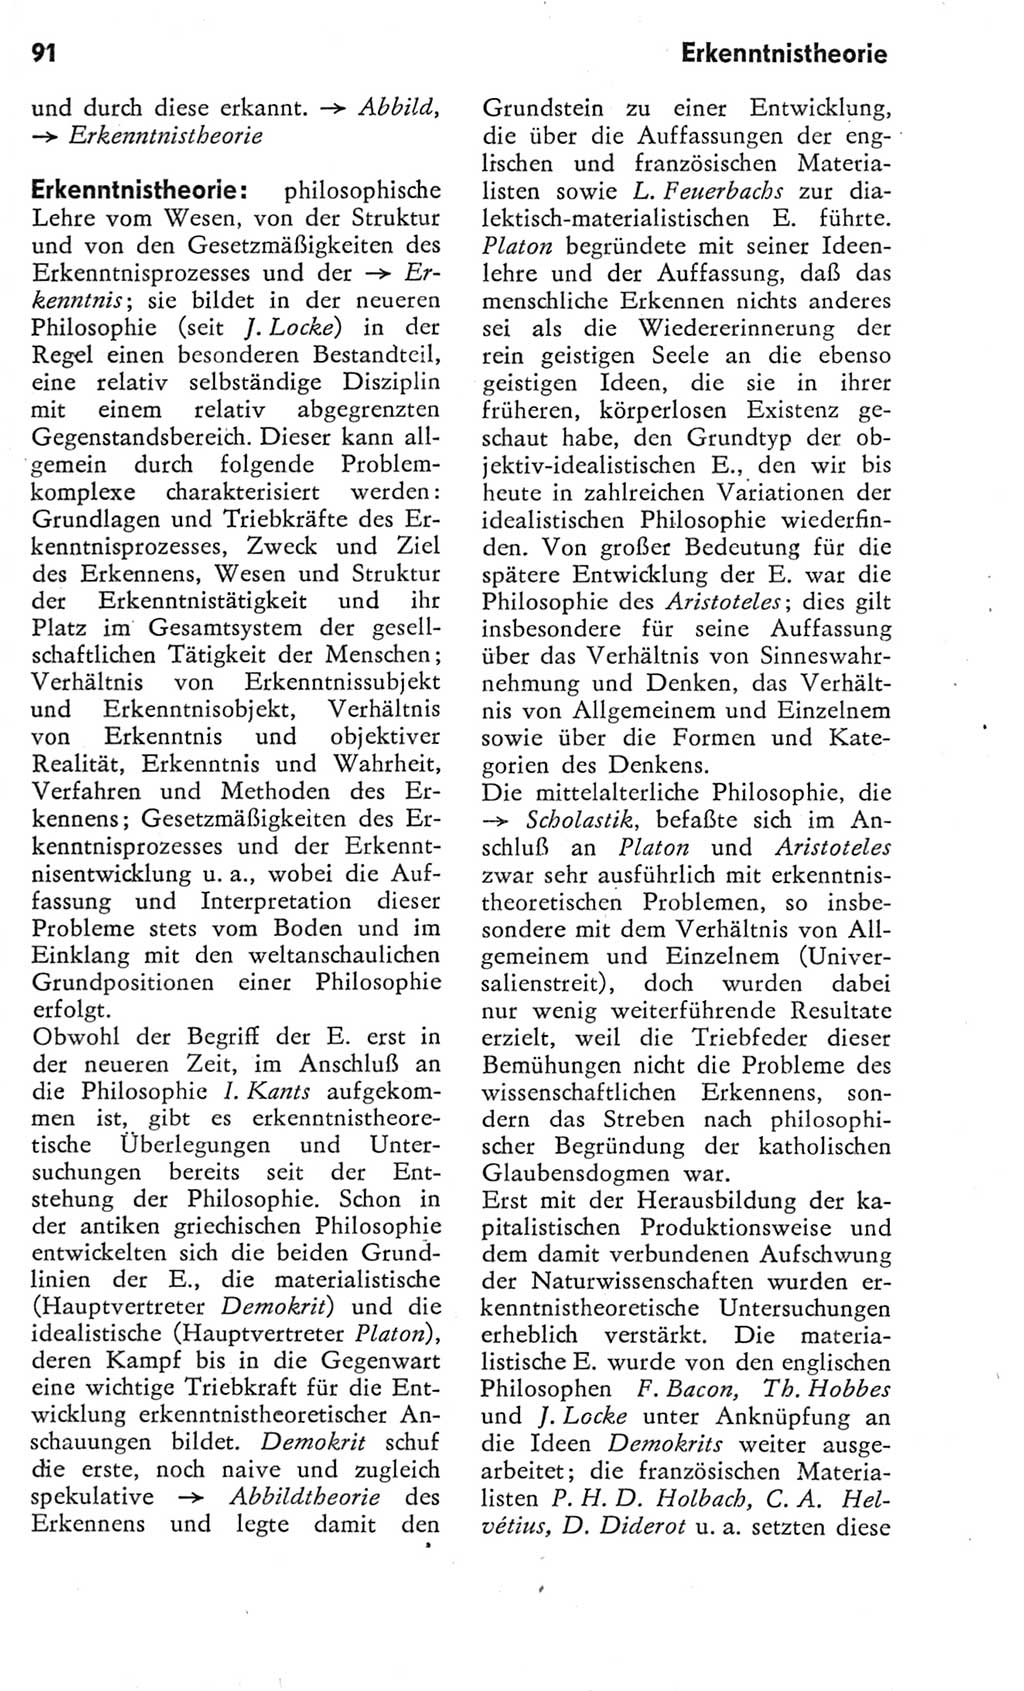 Kleines Wörterbuch der marxistisch-leninistischen Philosophie [Deutsche Demokratische Republik (DDR)] 1975, Seite 91 (Kl. Wb. ML Phil. DDR 1975, S. 91)